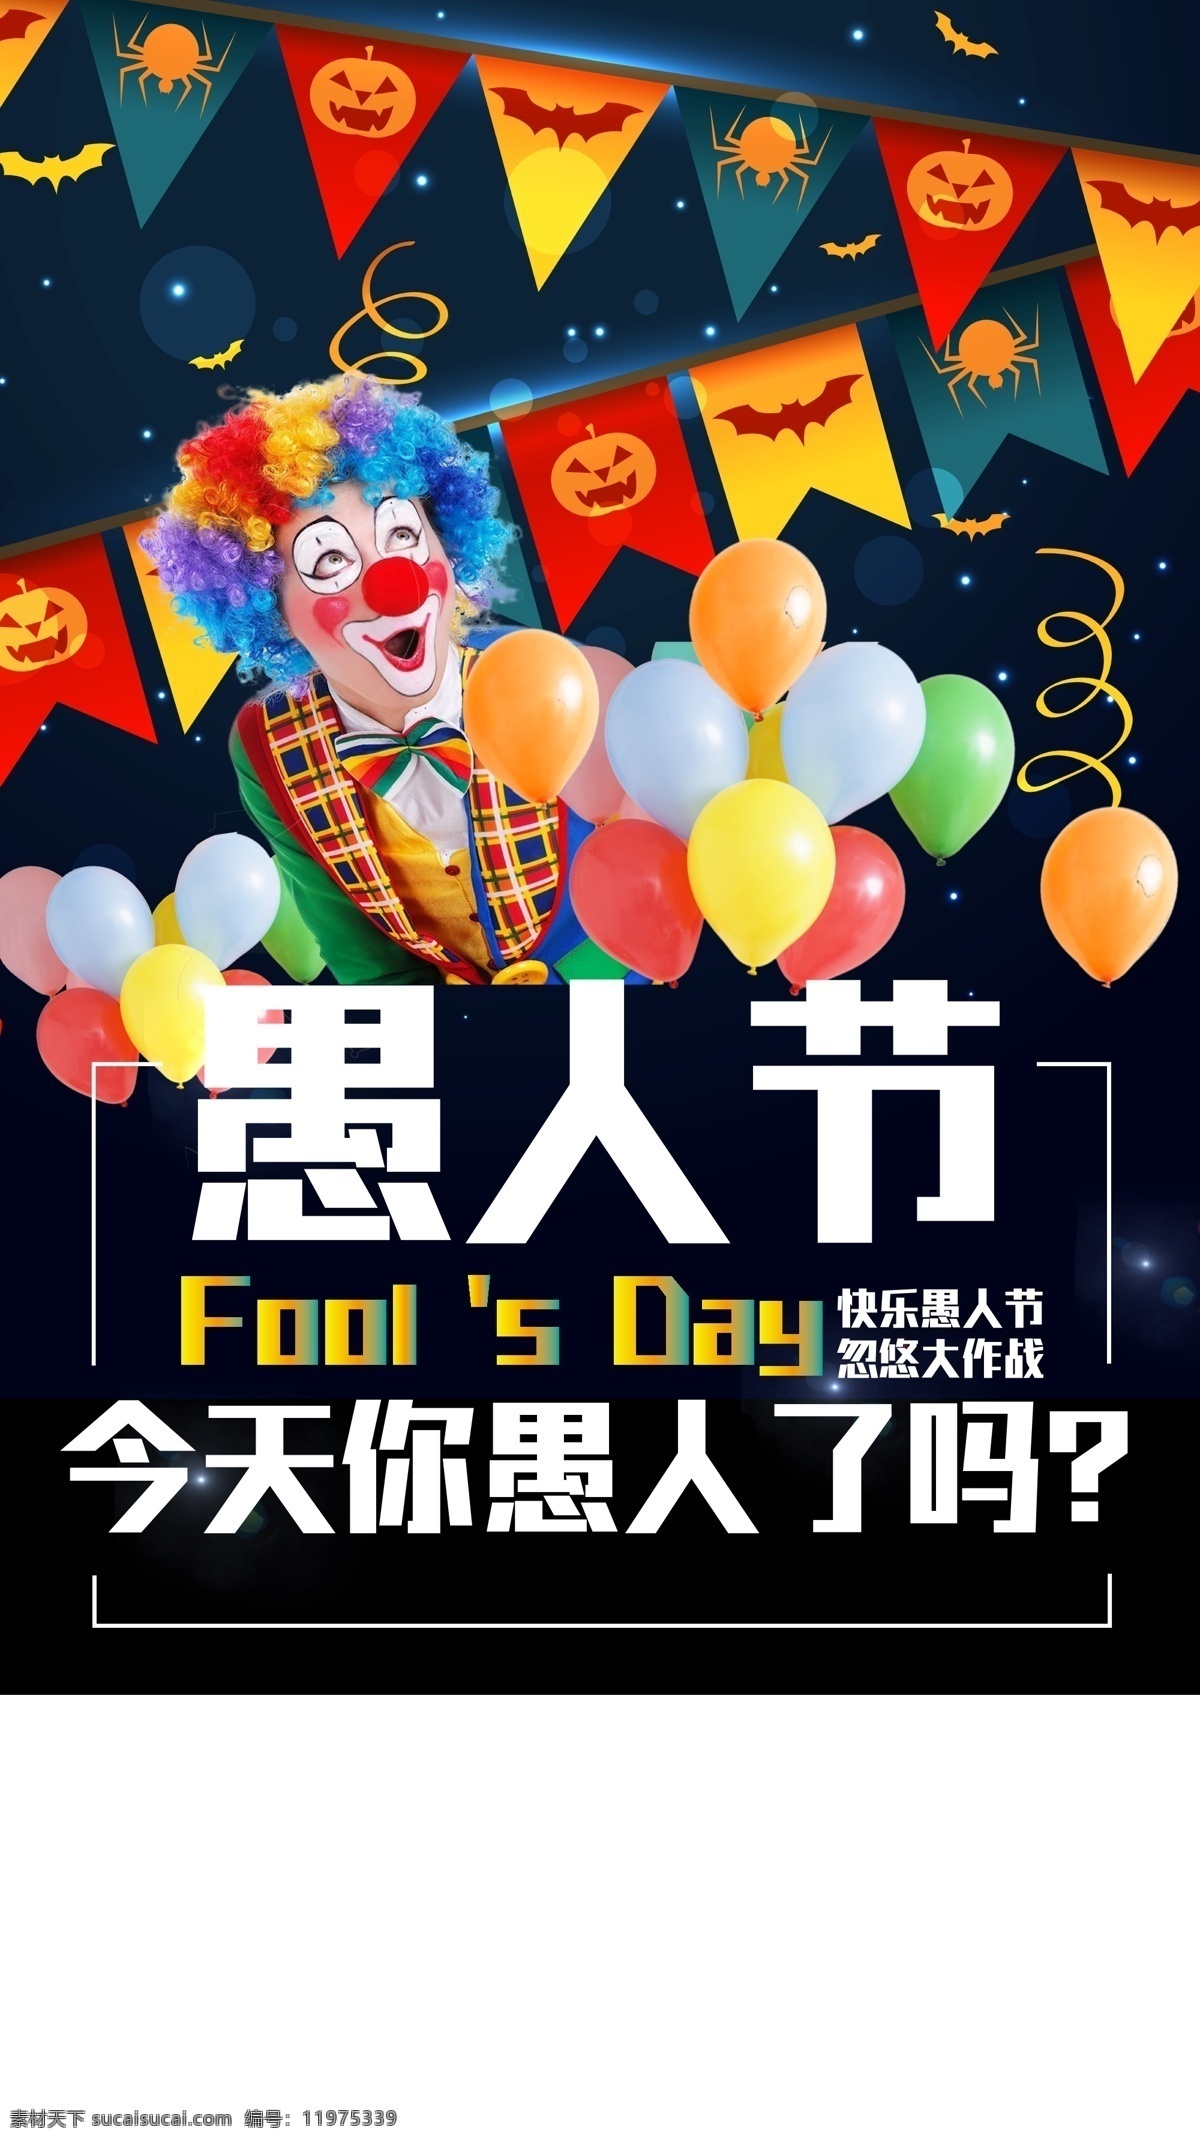 愚人节宣传单 小丑 愚人节 开心 气球 快乐